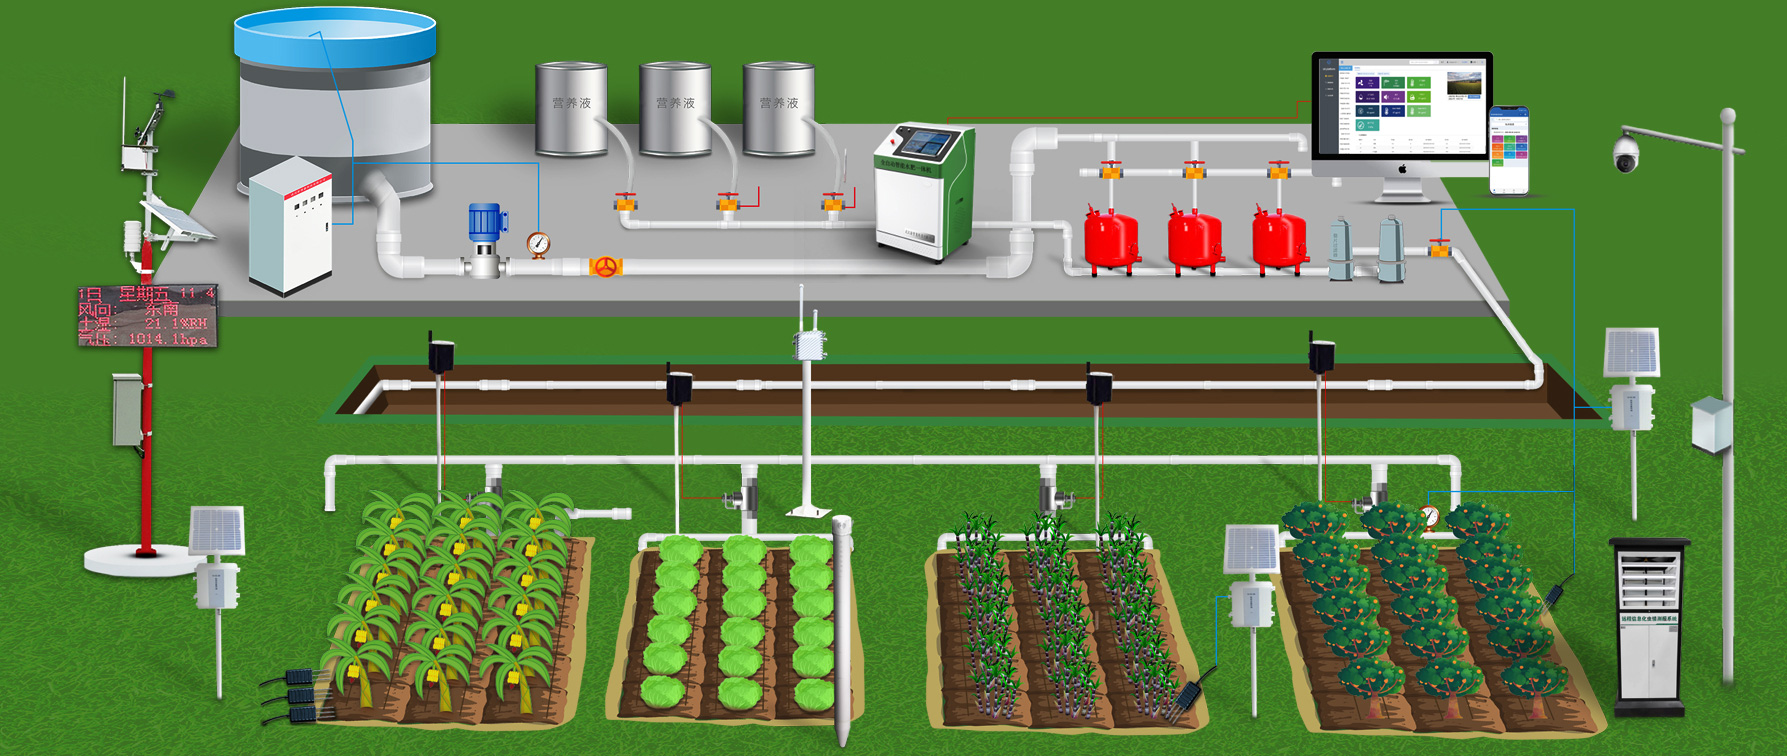 智慧灌溉系统对农业的作用